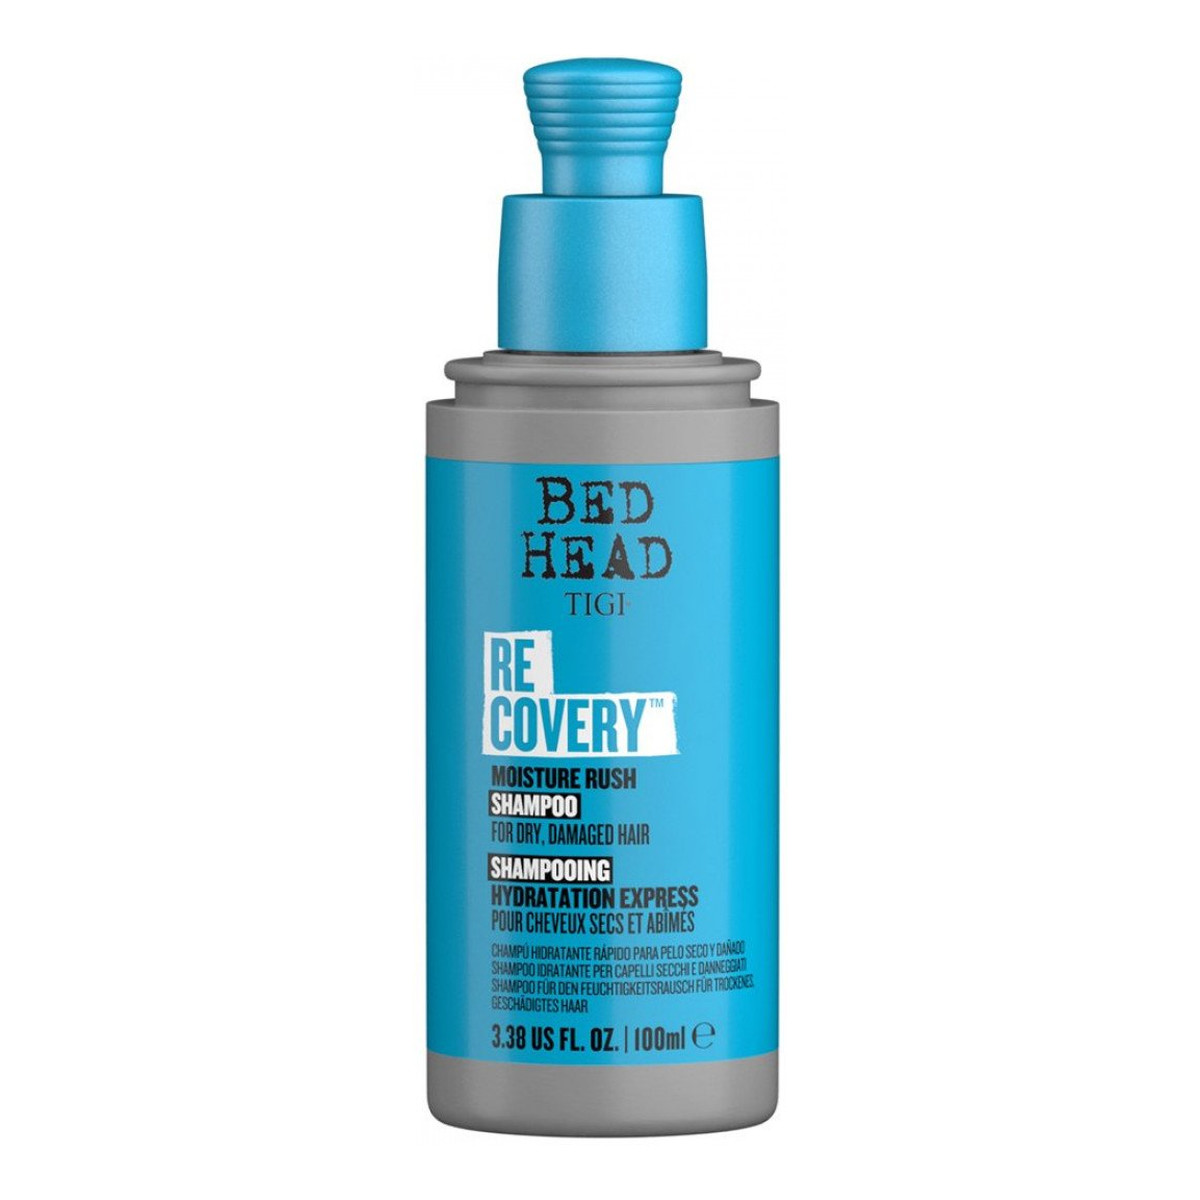 Tigi Bed head recovery moisture rush shampoo nawilżający szampon do włosów suchych i zniszczonych 100ml